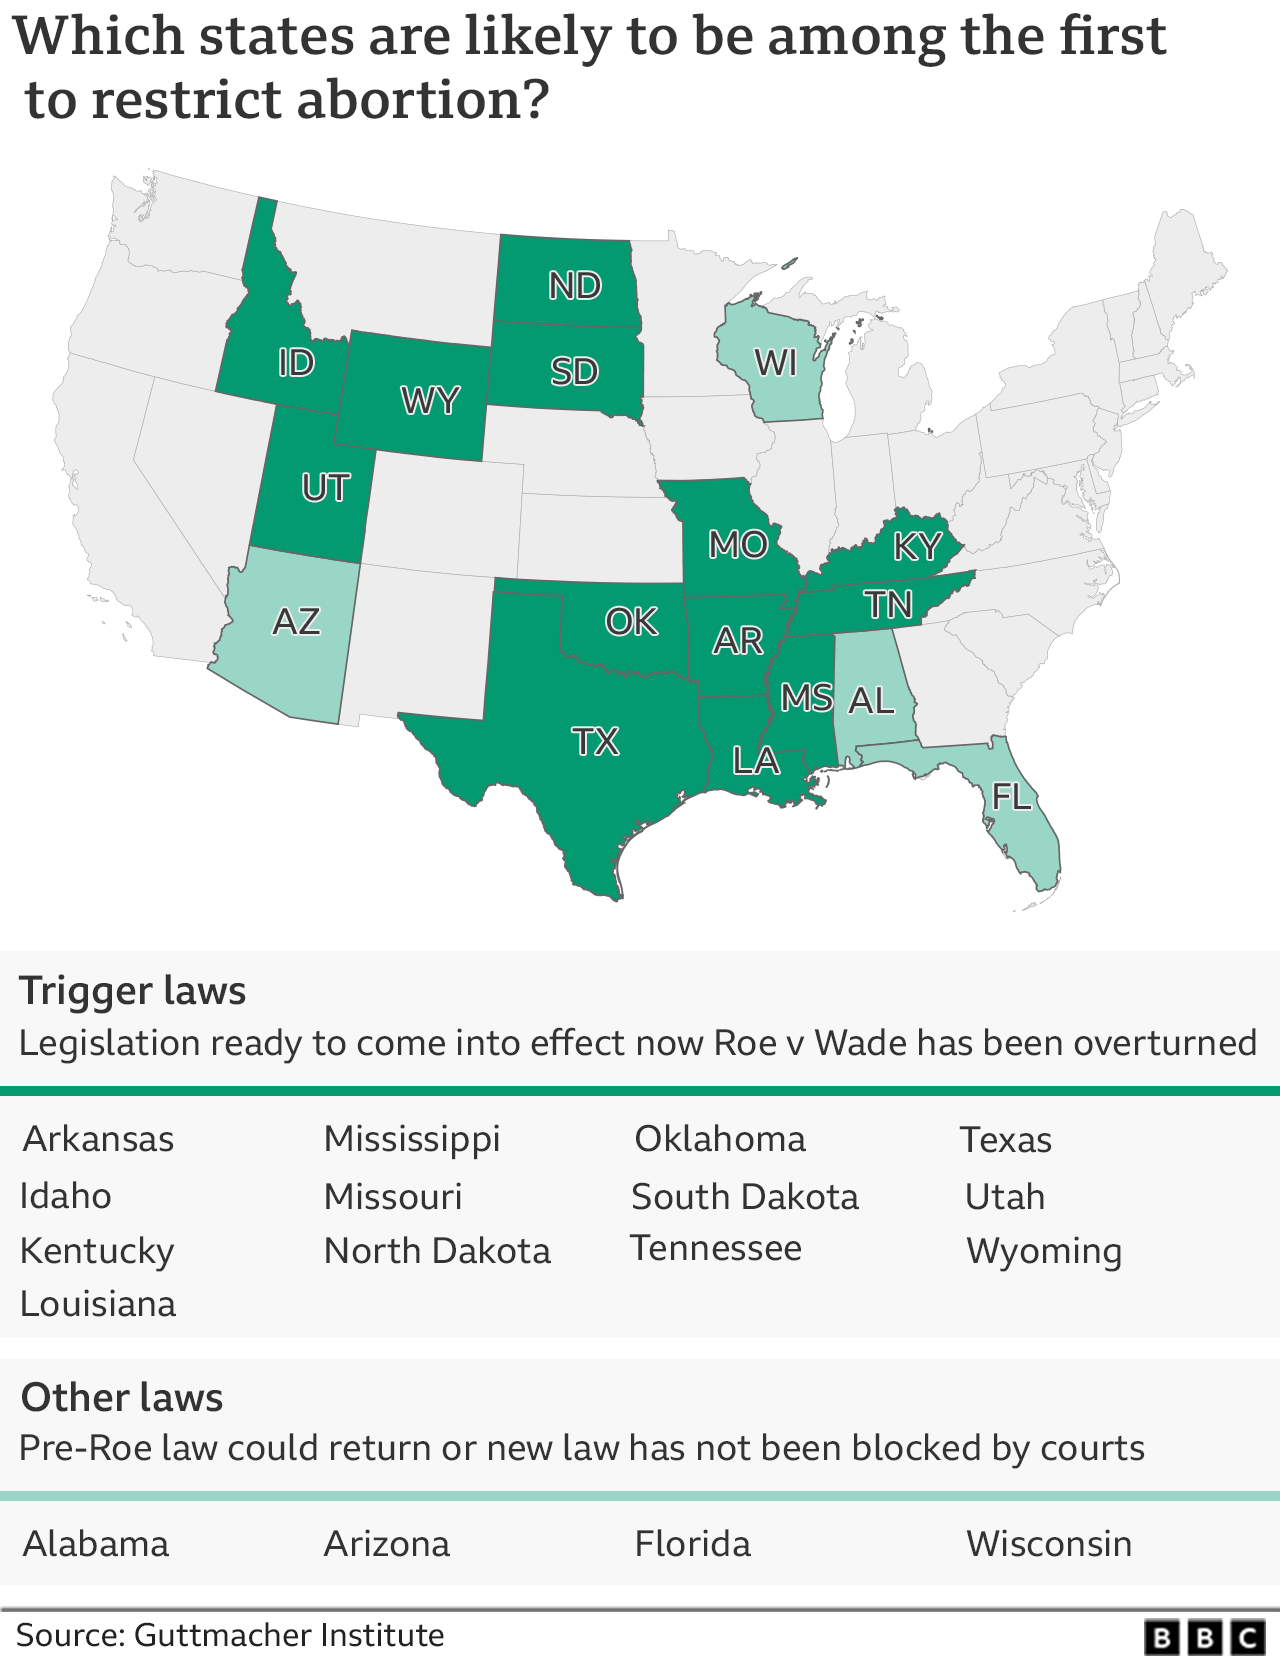 Ένας χάρτης δείχνει ποιες πολιτείες έχουν προετοιμαστεί νομοθεσία να επηρεάσει τις αμβλώσεις σε περίπτωση ανατροπής του Roe v Wade